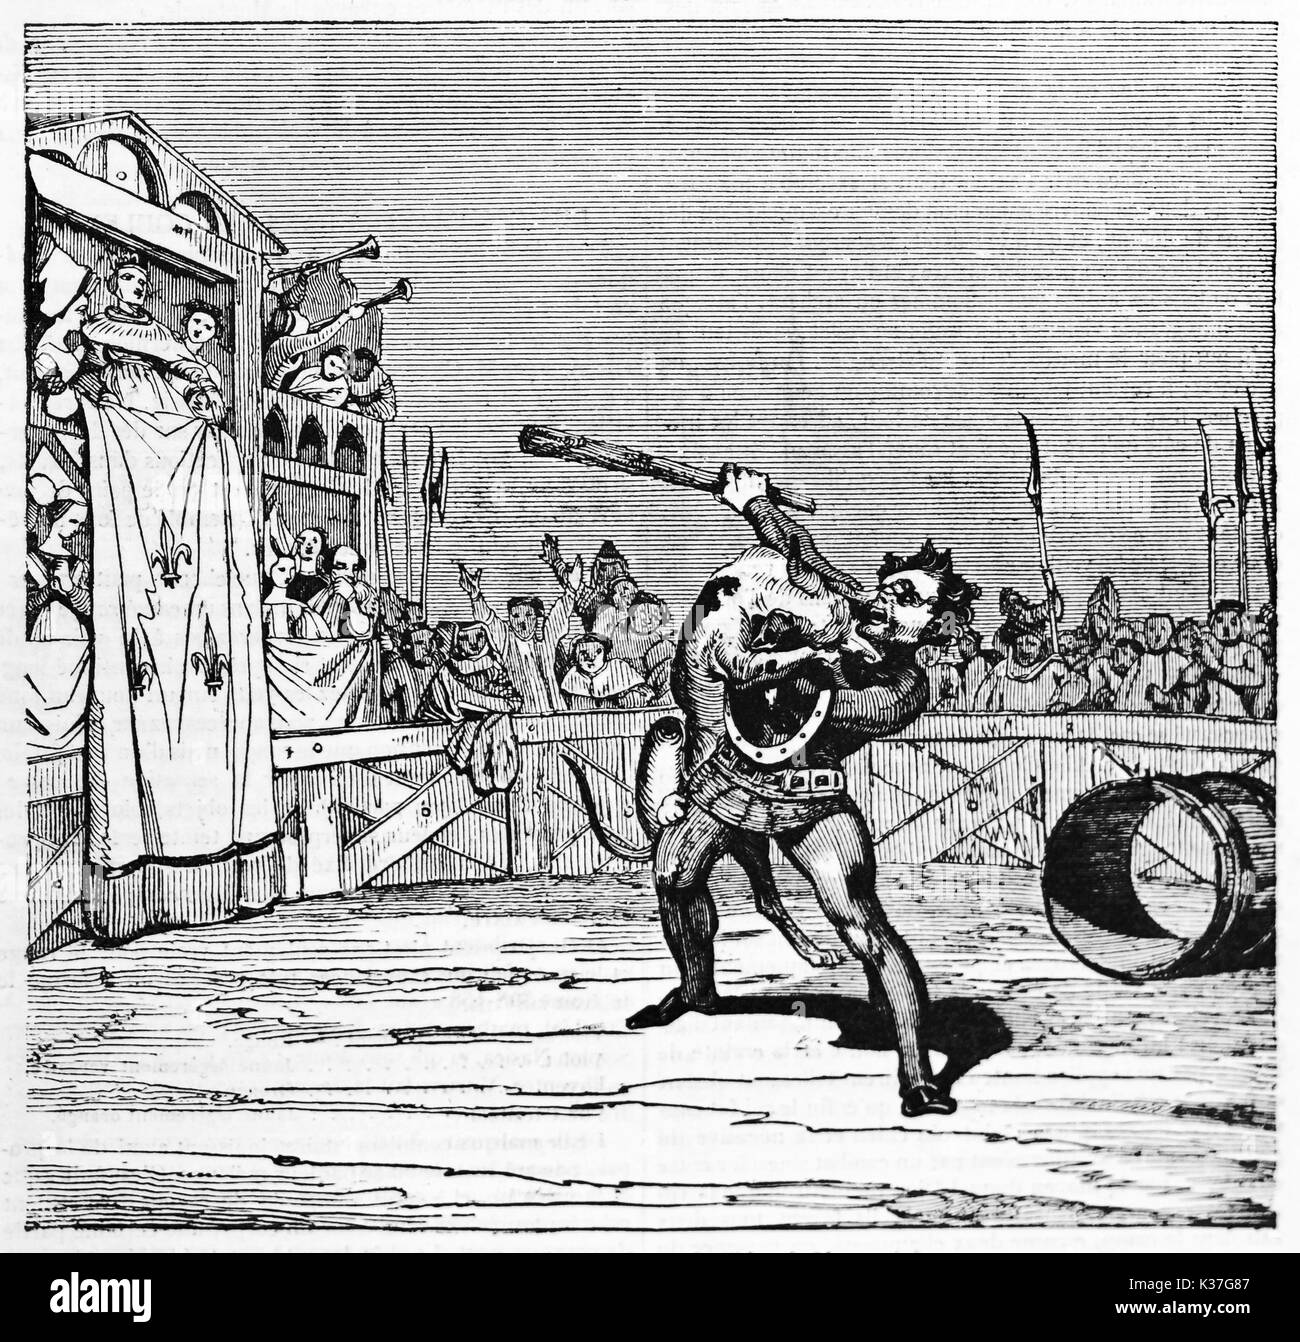 Il cane e Macarie combattimenti in arena come detto leggenda medioevale di Montargis cane. Vecchia illustrazione di autore non identificato, pubblicato il Magasin pittoresco, Parigi, 1834 Foto Stock